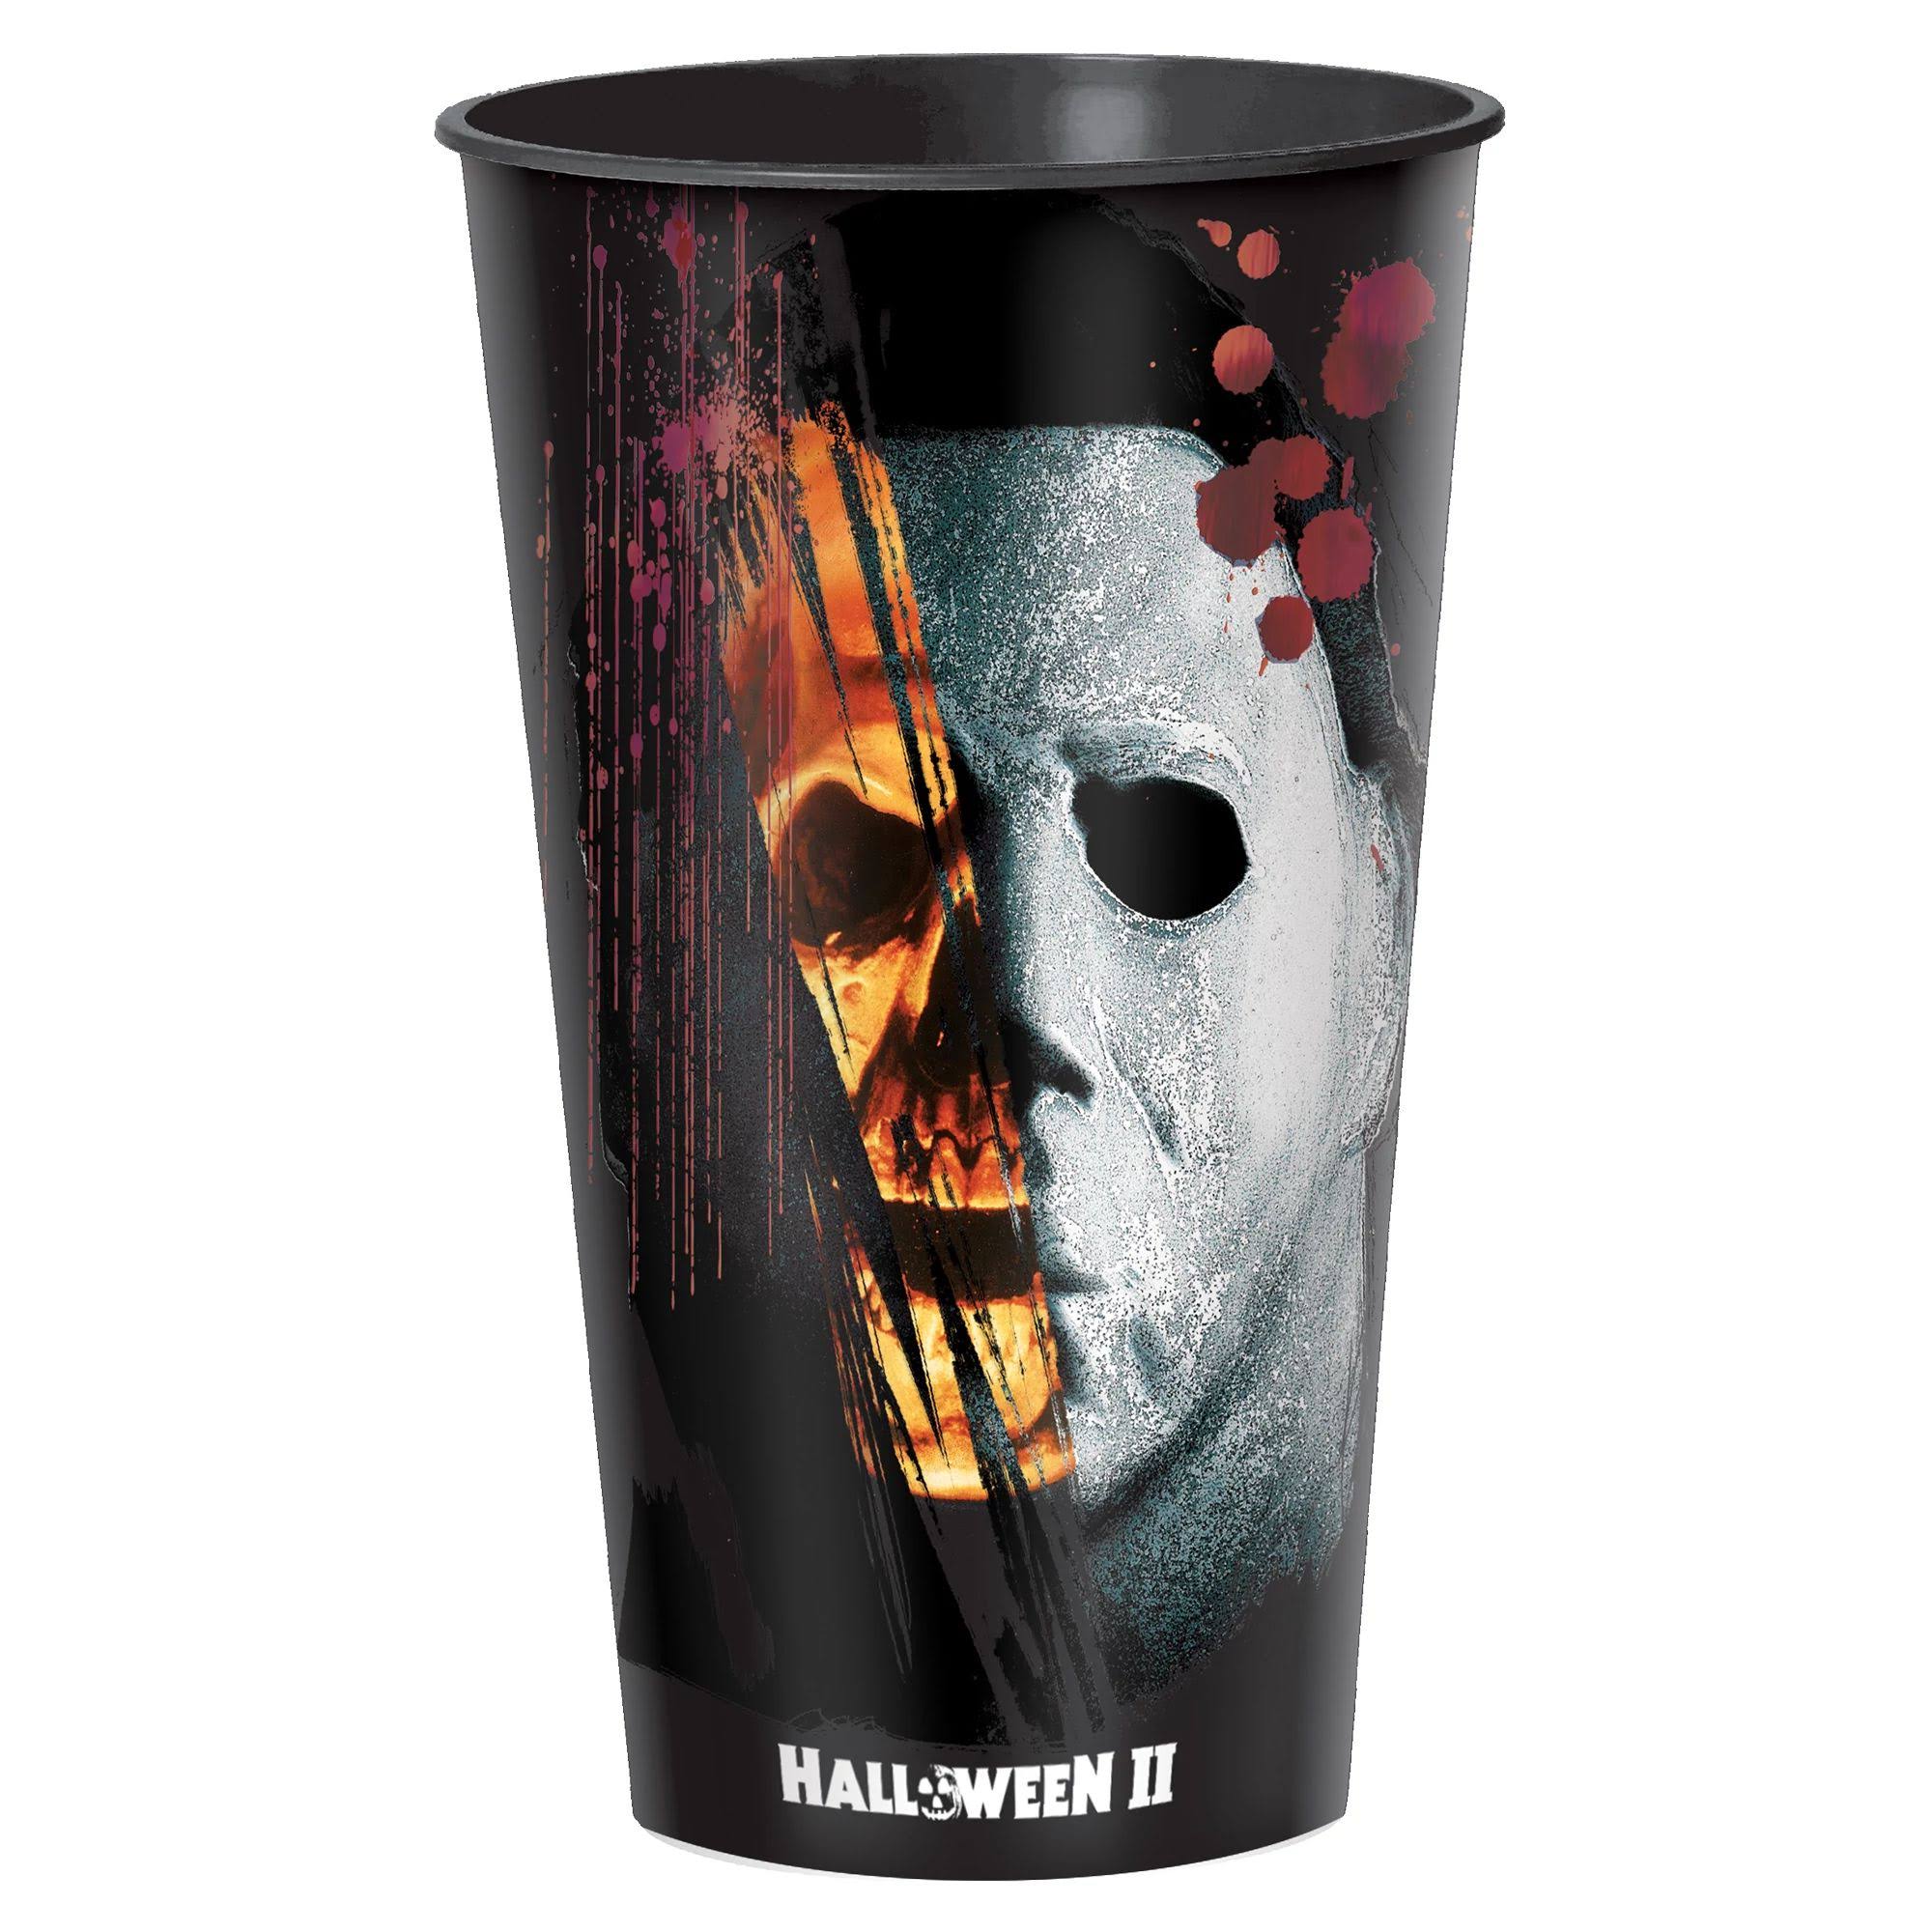 Halloween Ii Michael Myers Plastic Cup